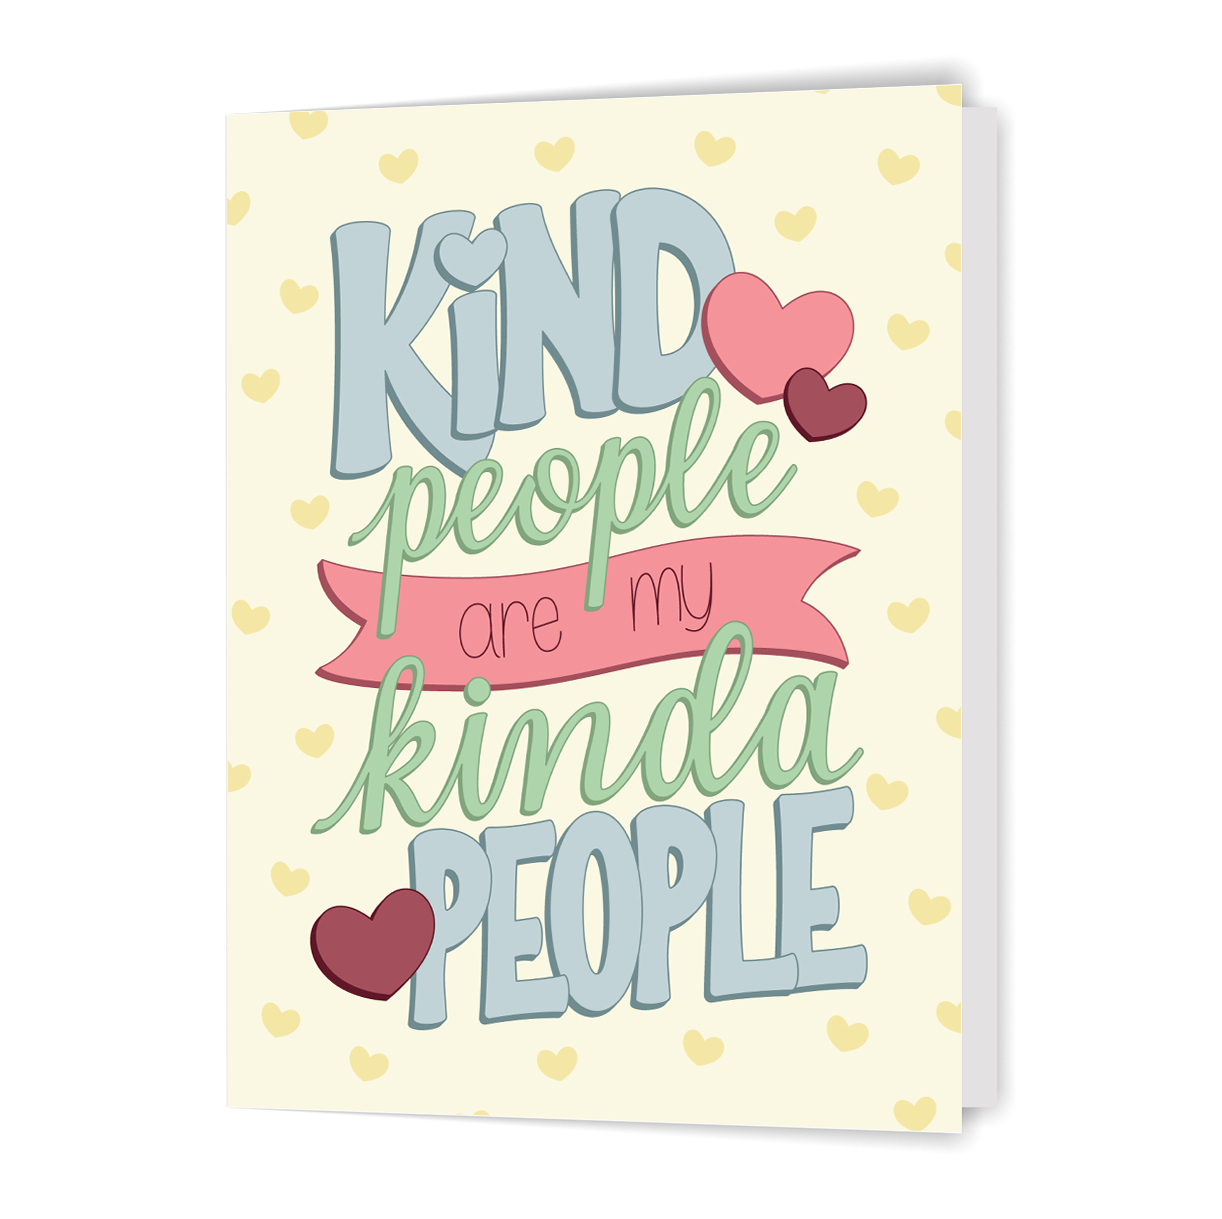 Kind People Are My Kinda People - Greeting Card